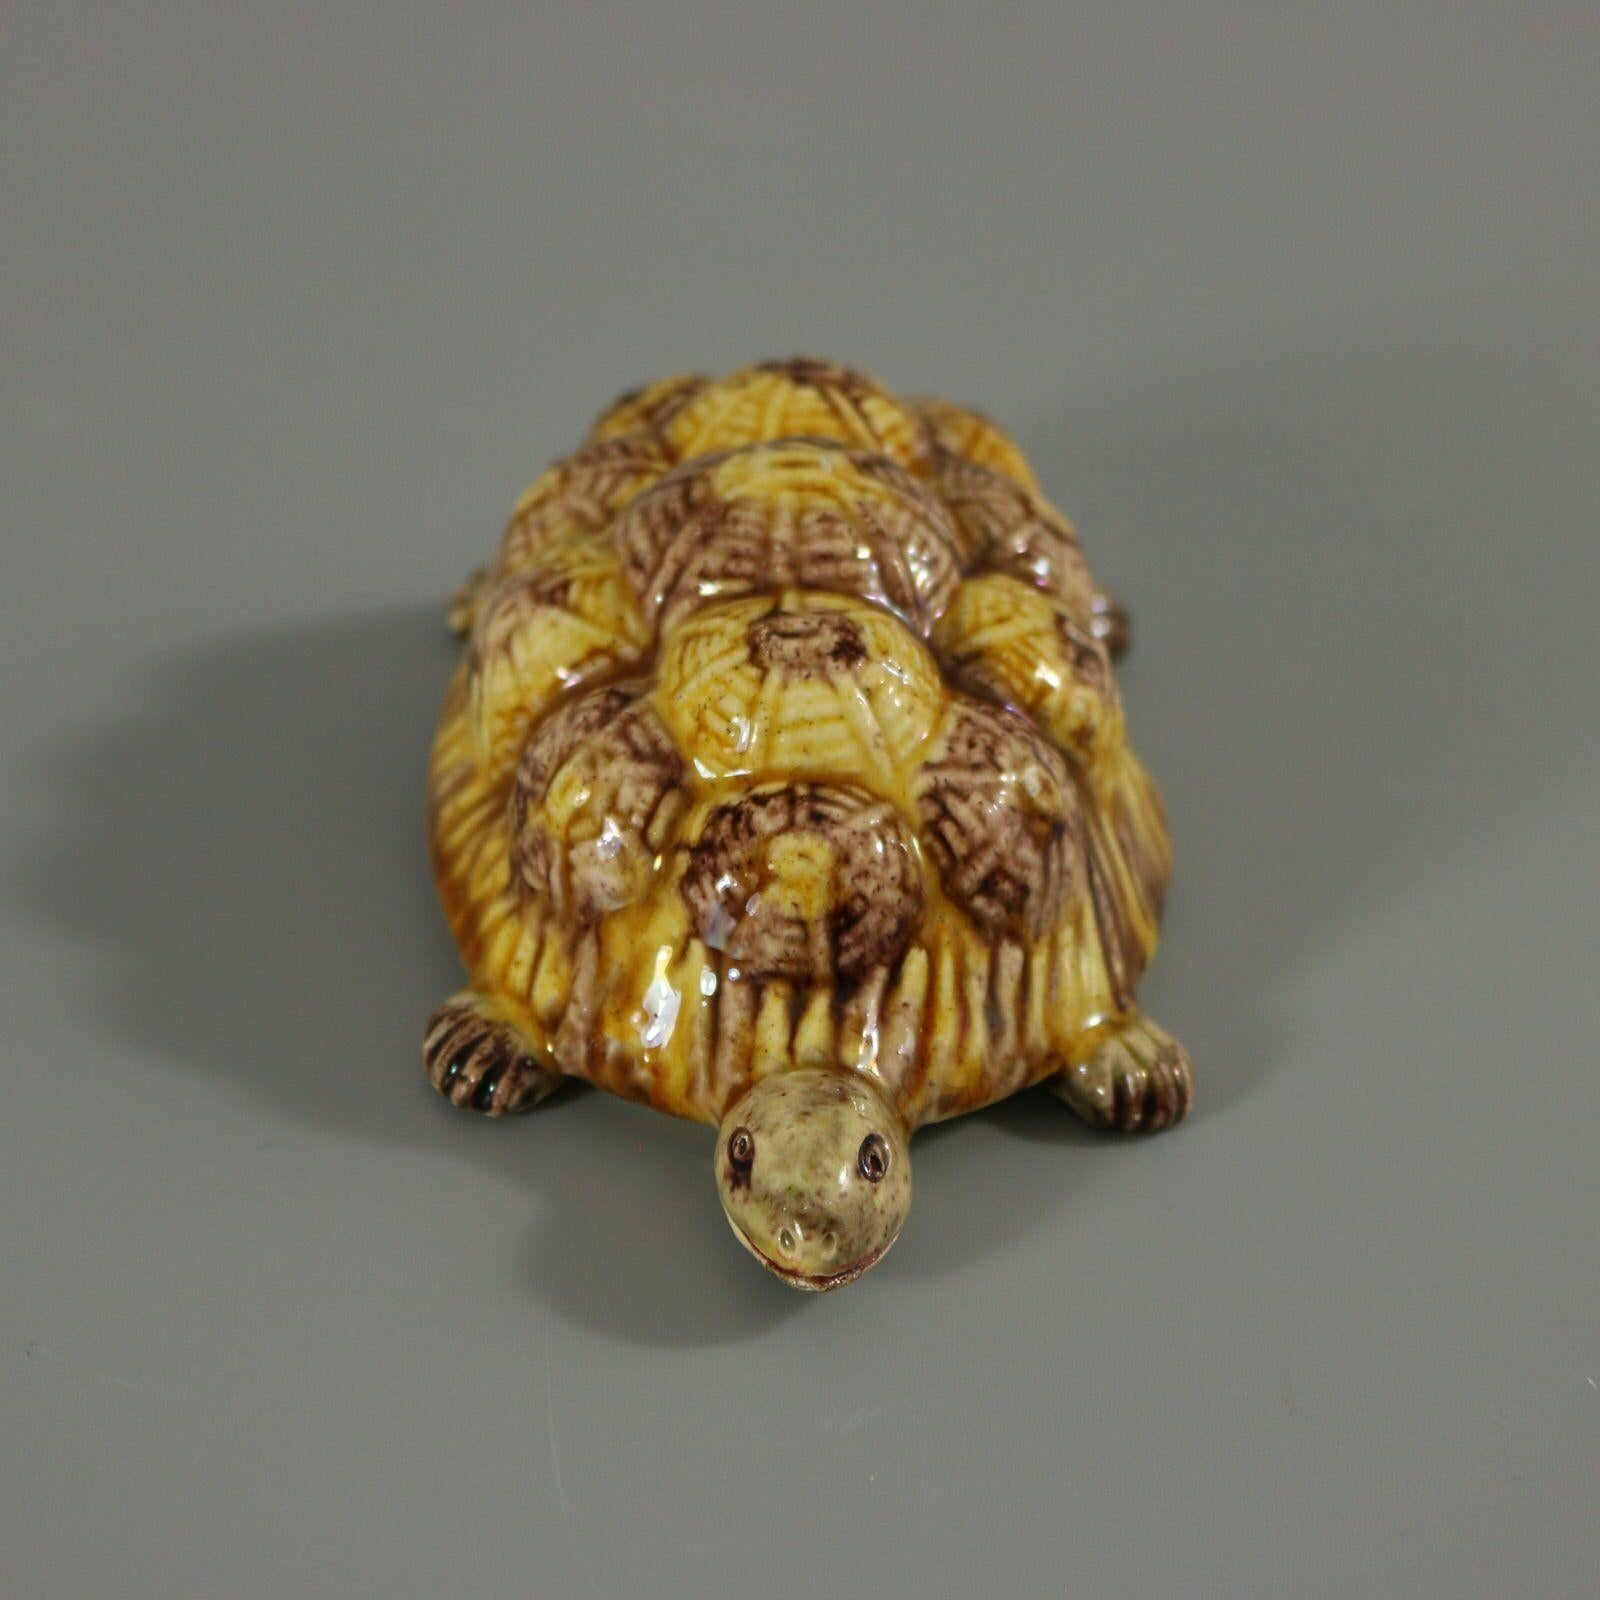 Figurine portugaise en majolique de Palissy qui représente une tortue. Coloration : brun, ocre, gris, sont prédominants.